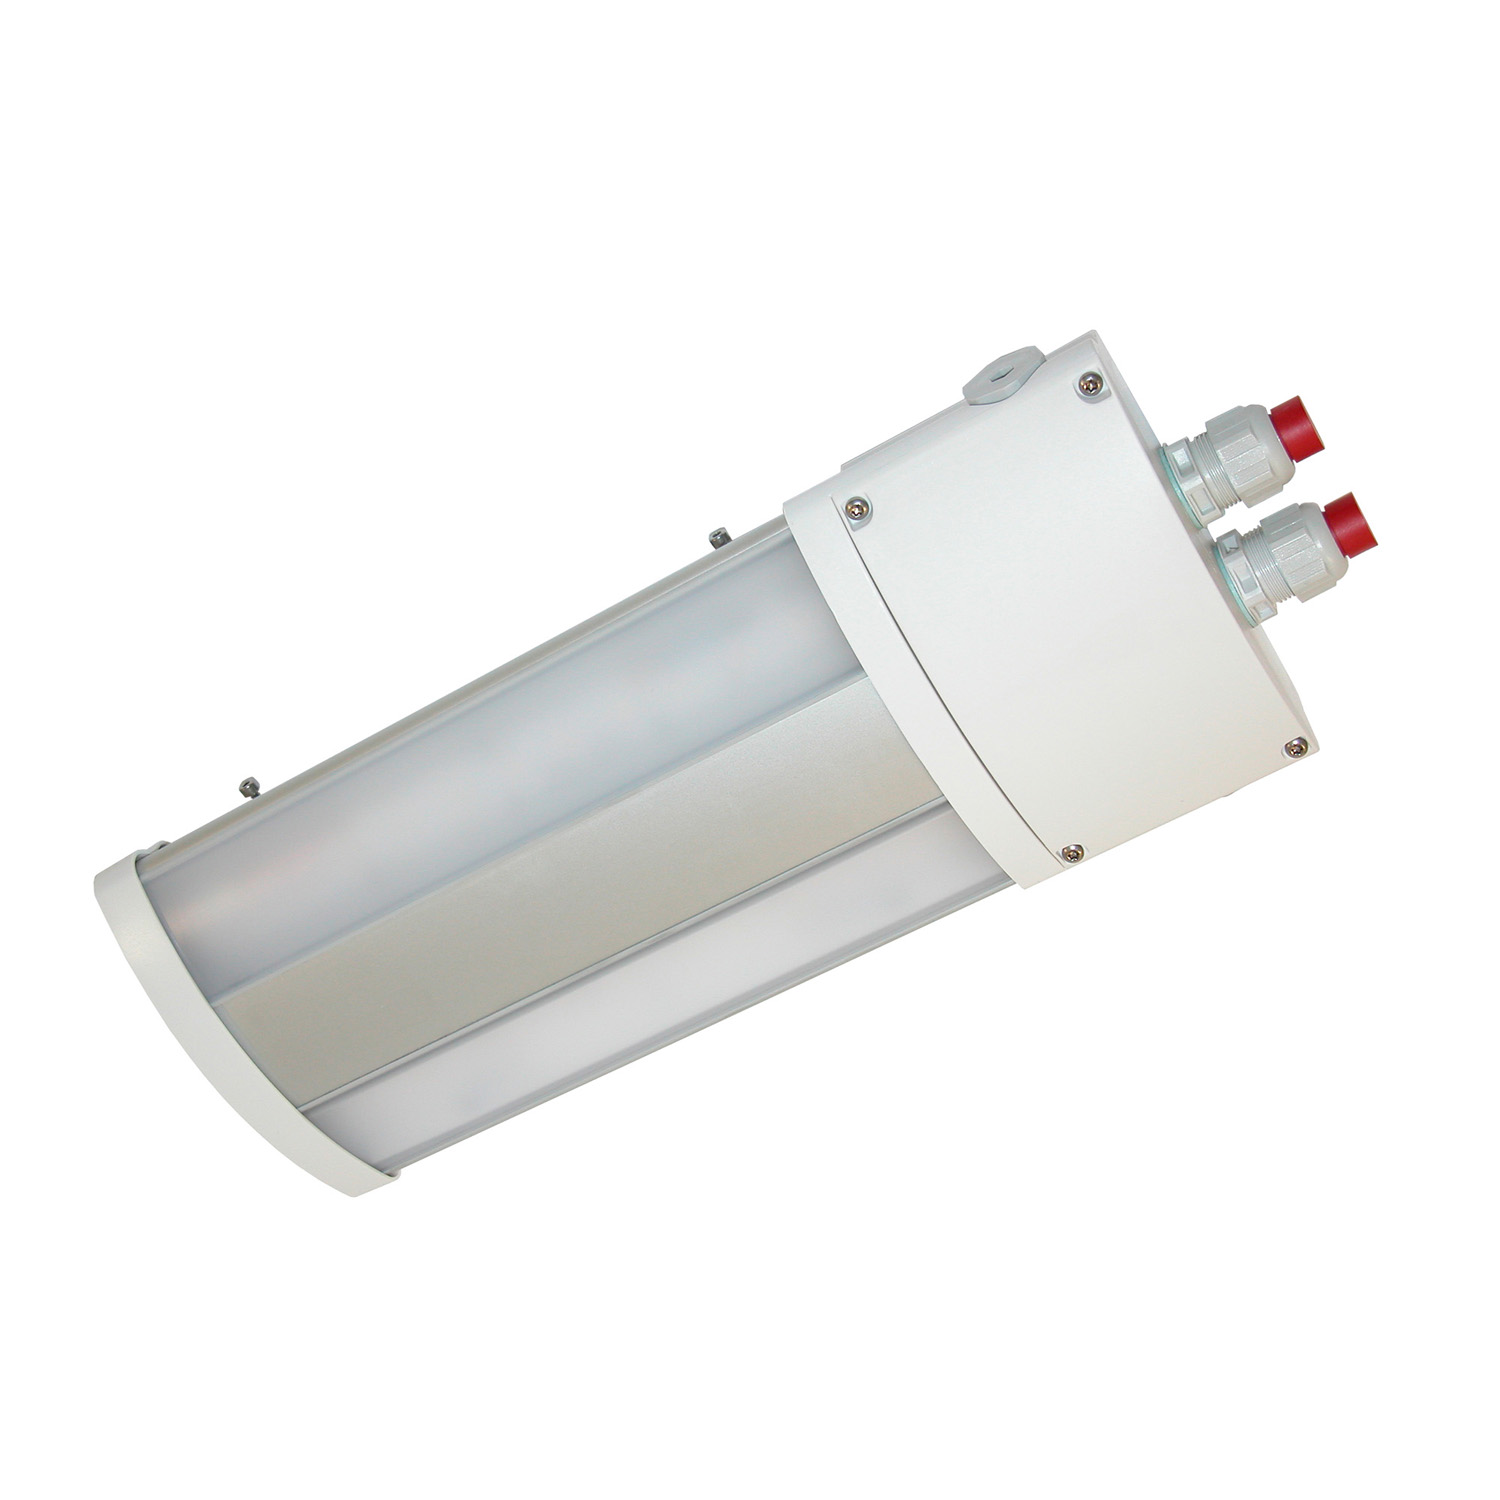 TL50024400 Watertight LED luminaire multipurpose, TL50 1000 840 220-240 M25 AS, 2X5W LED Short version